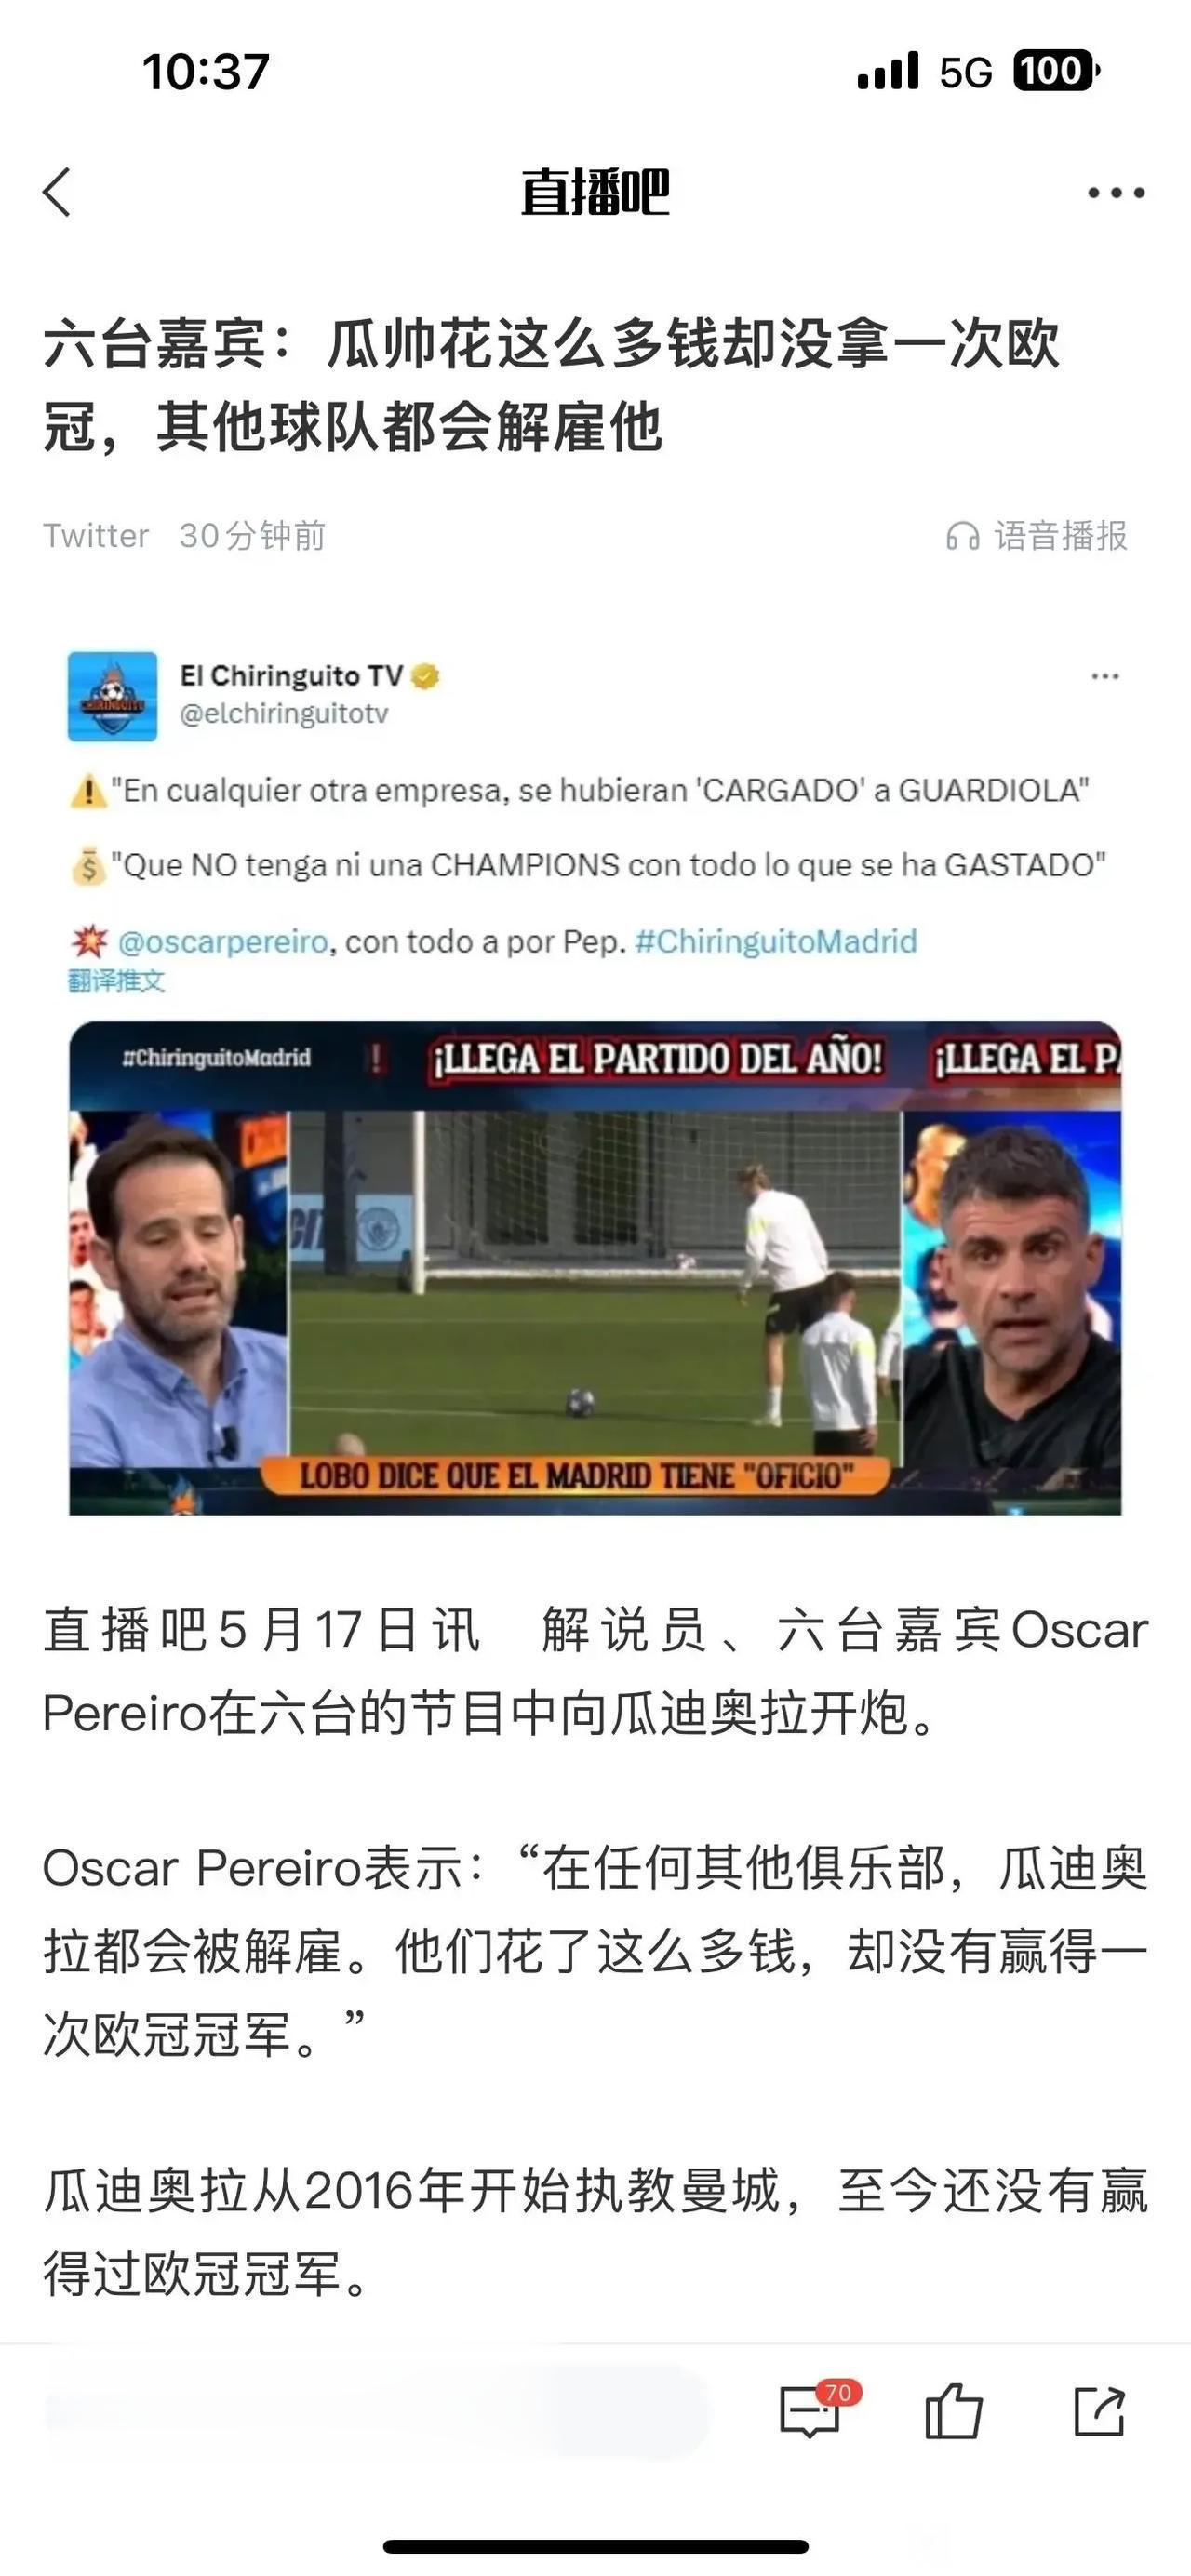 外媒说瓜迪奥拉花了那么多钱，还是拿不到欧冠冠军在其他队早下课了。

当初在拜仁没(1)